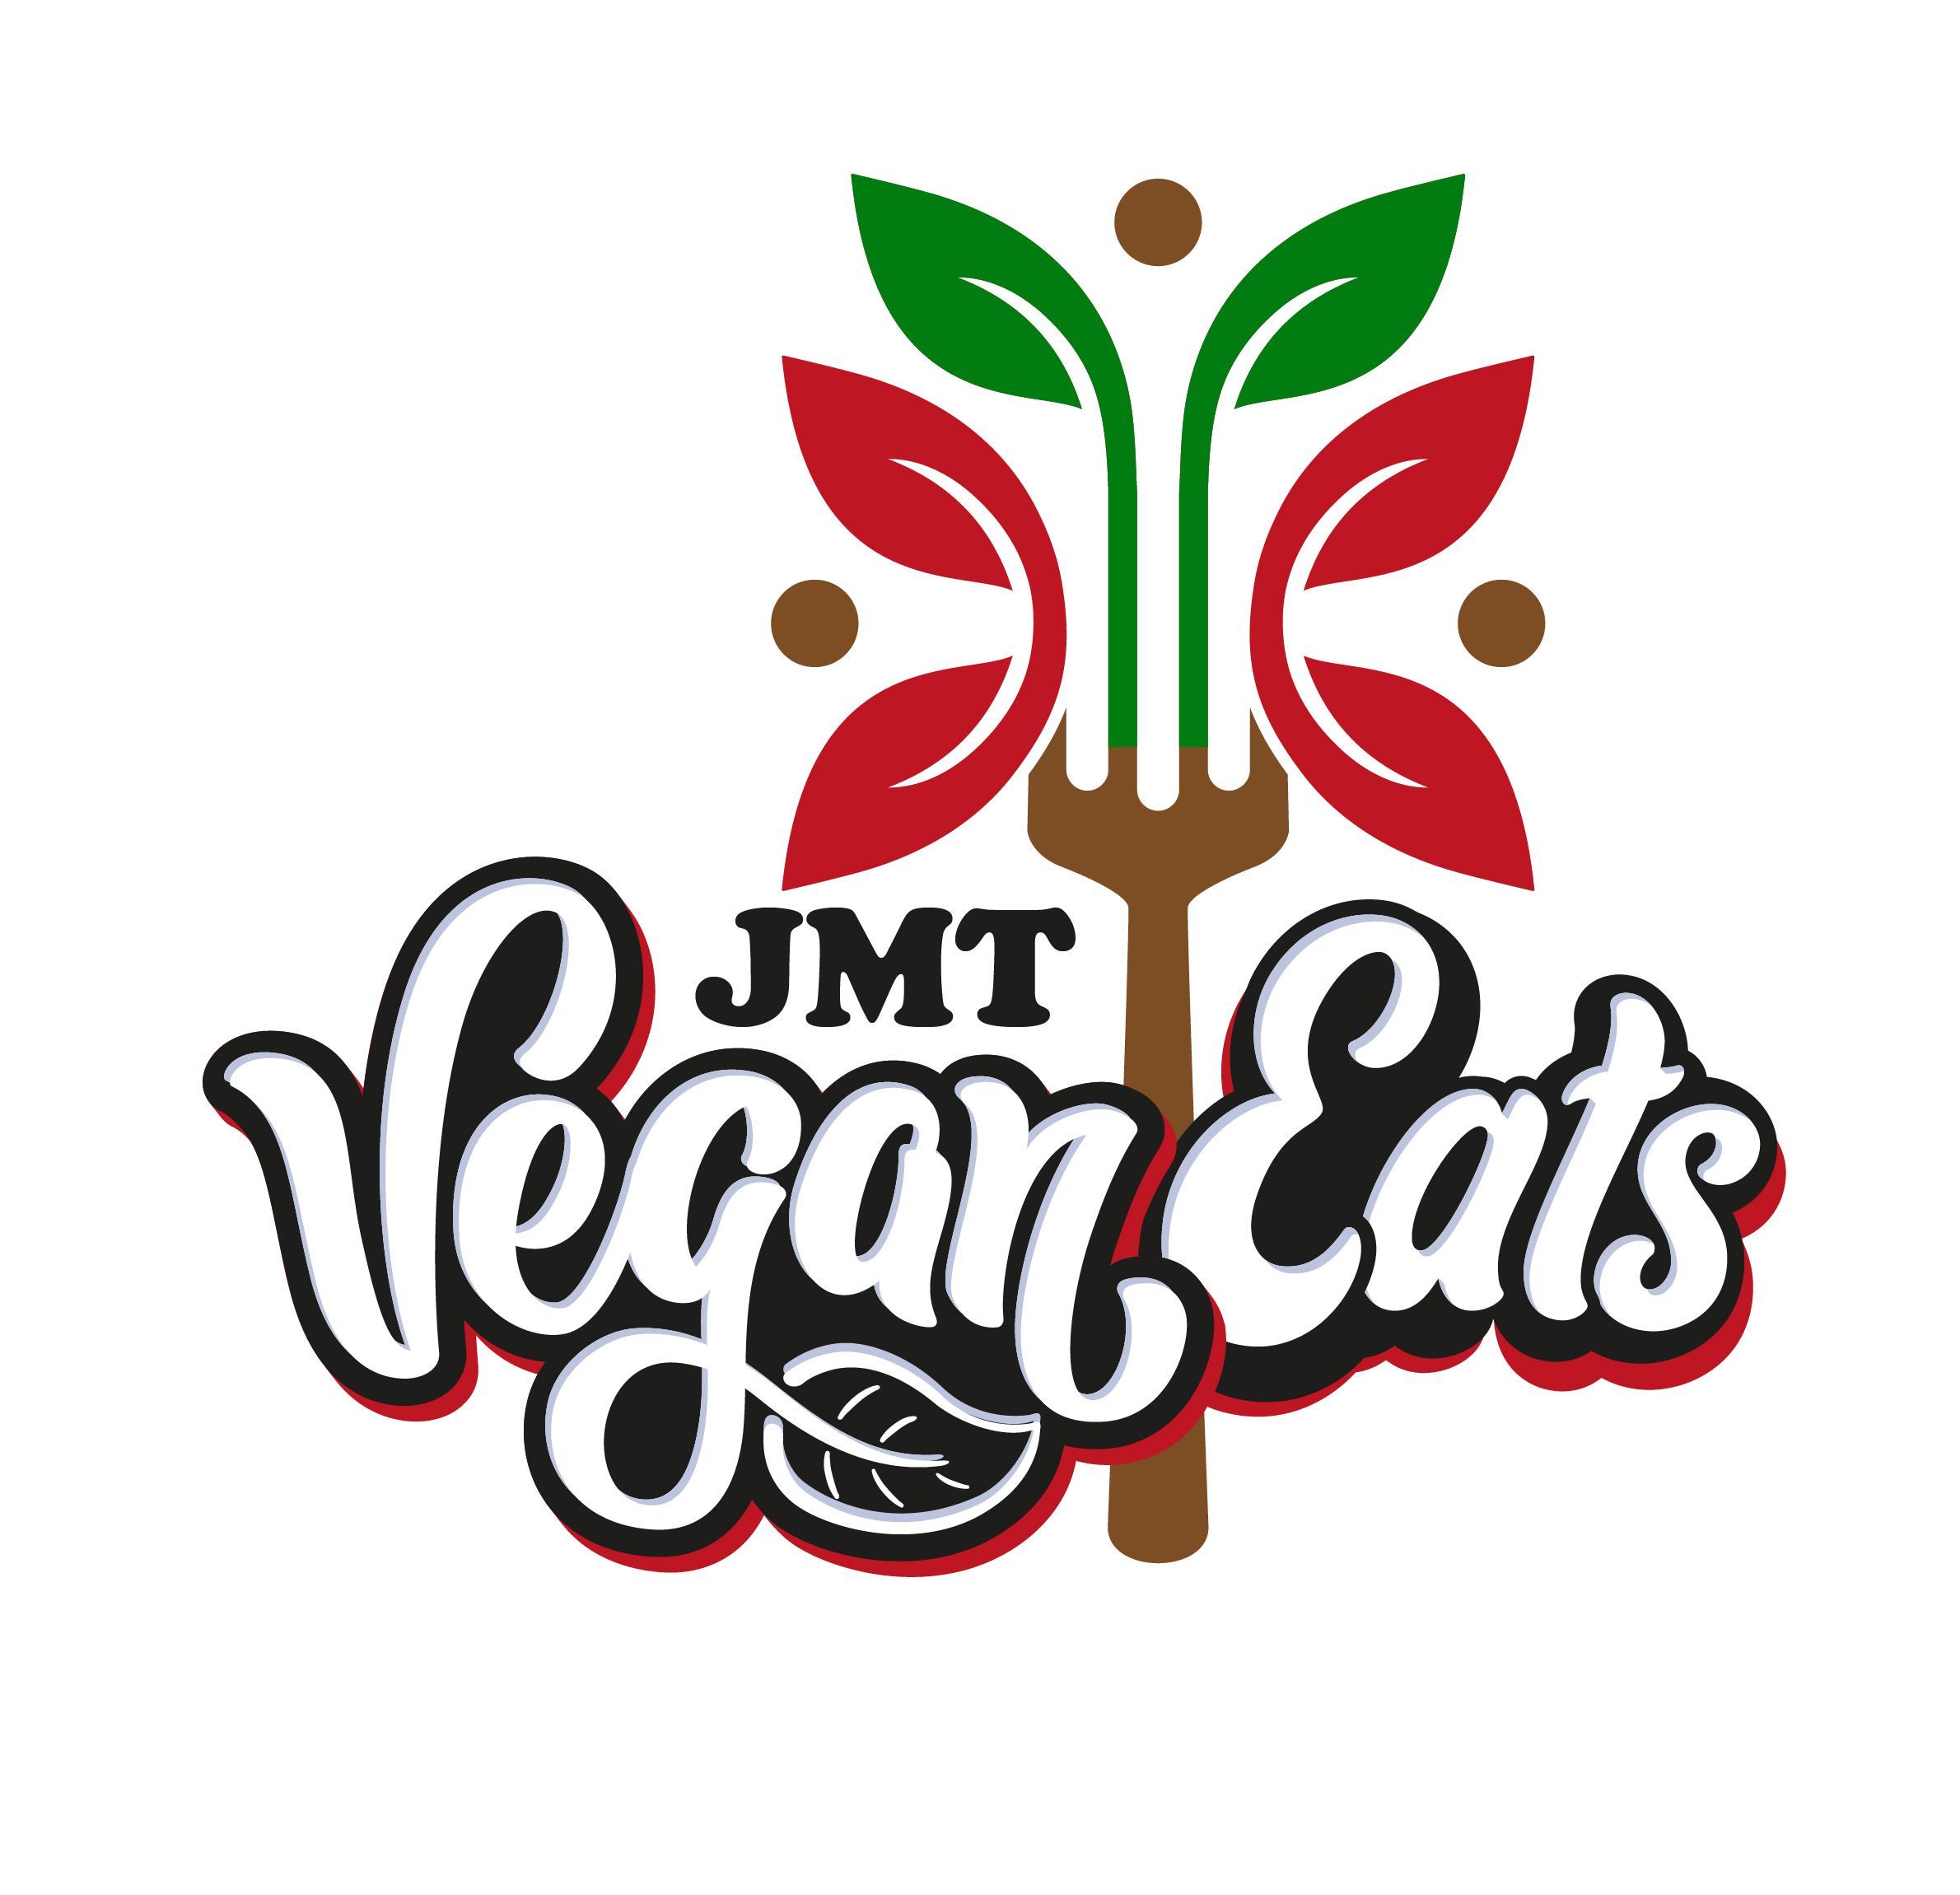 JMT Vegan Eats